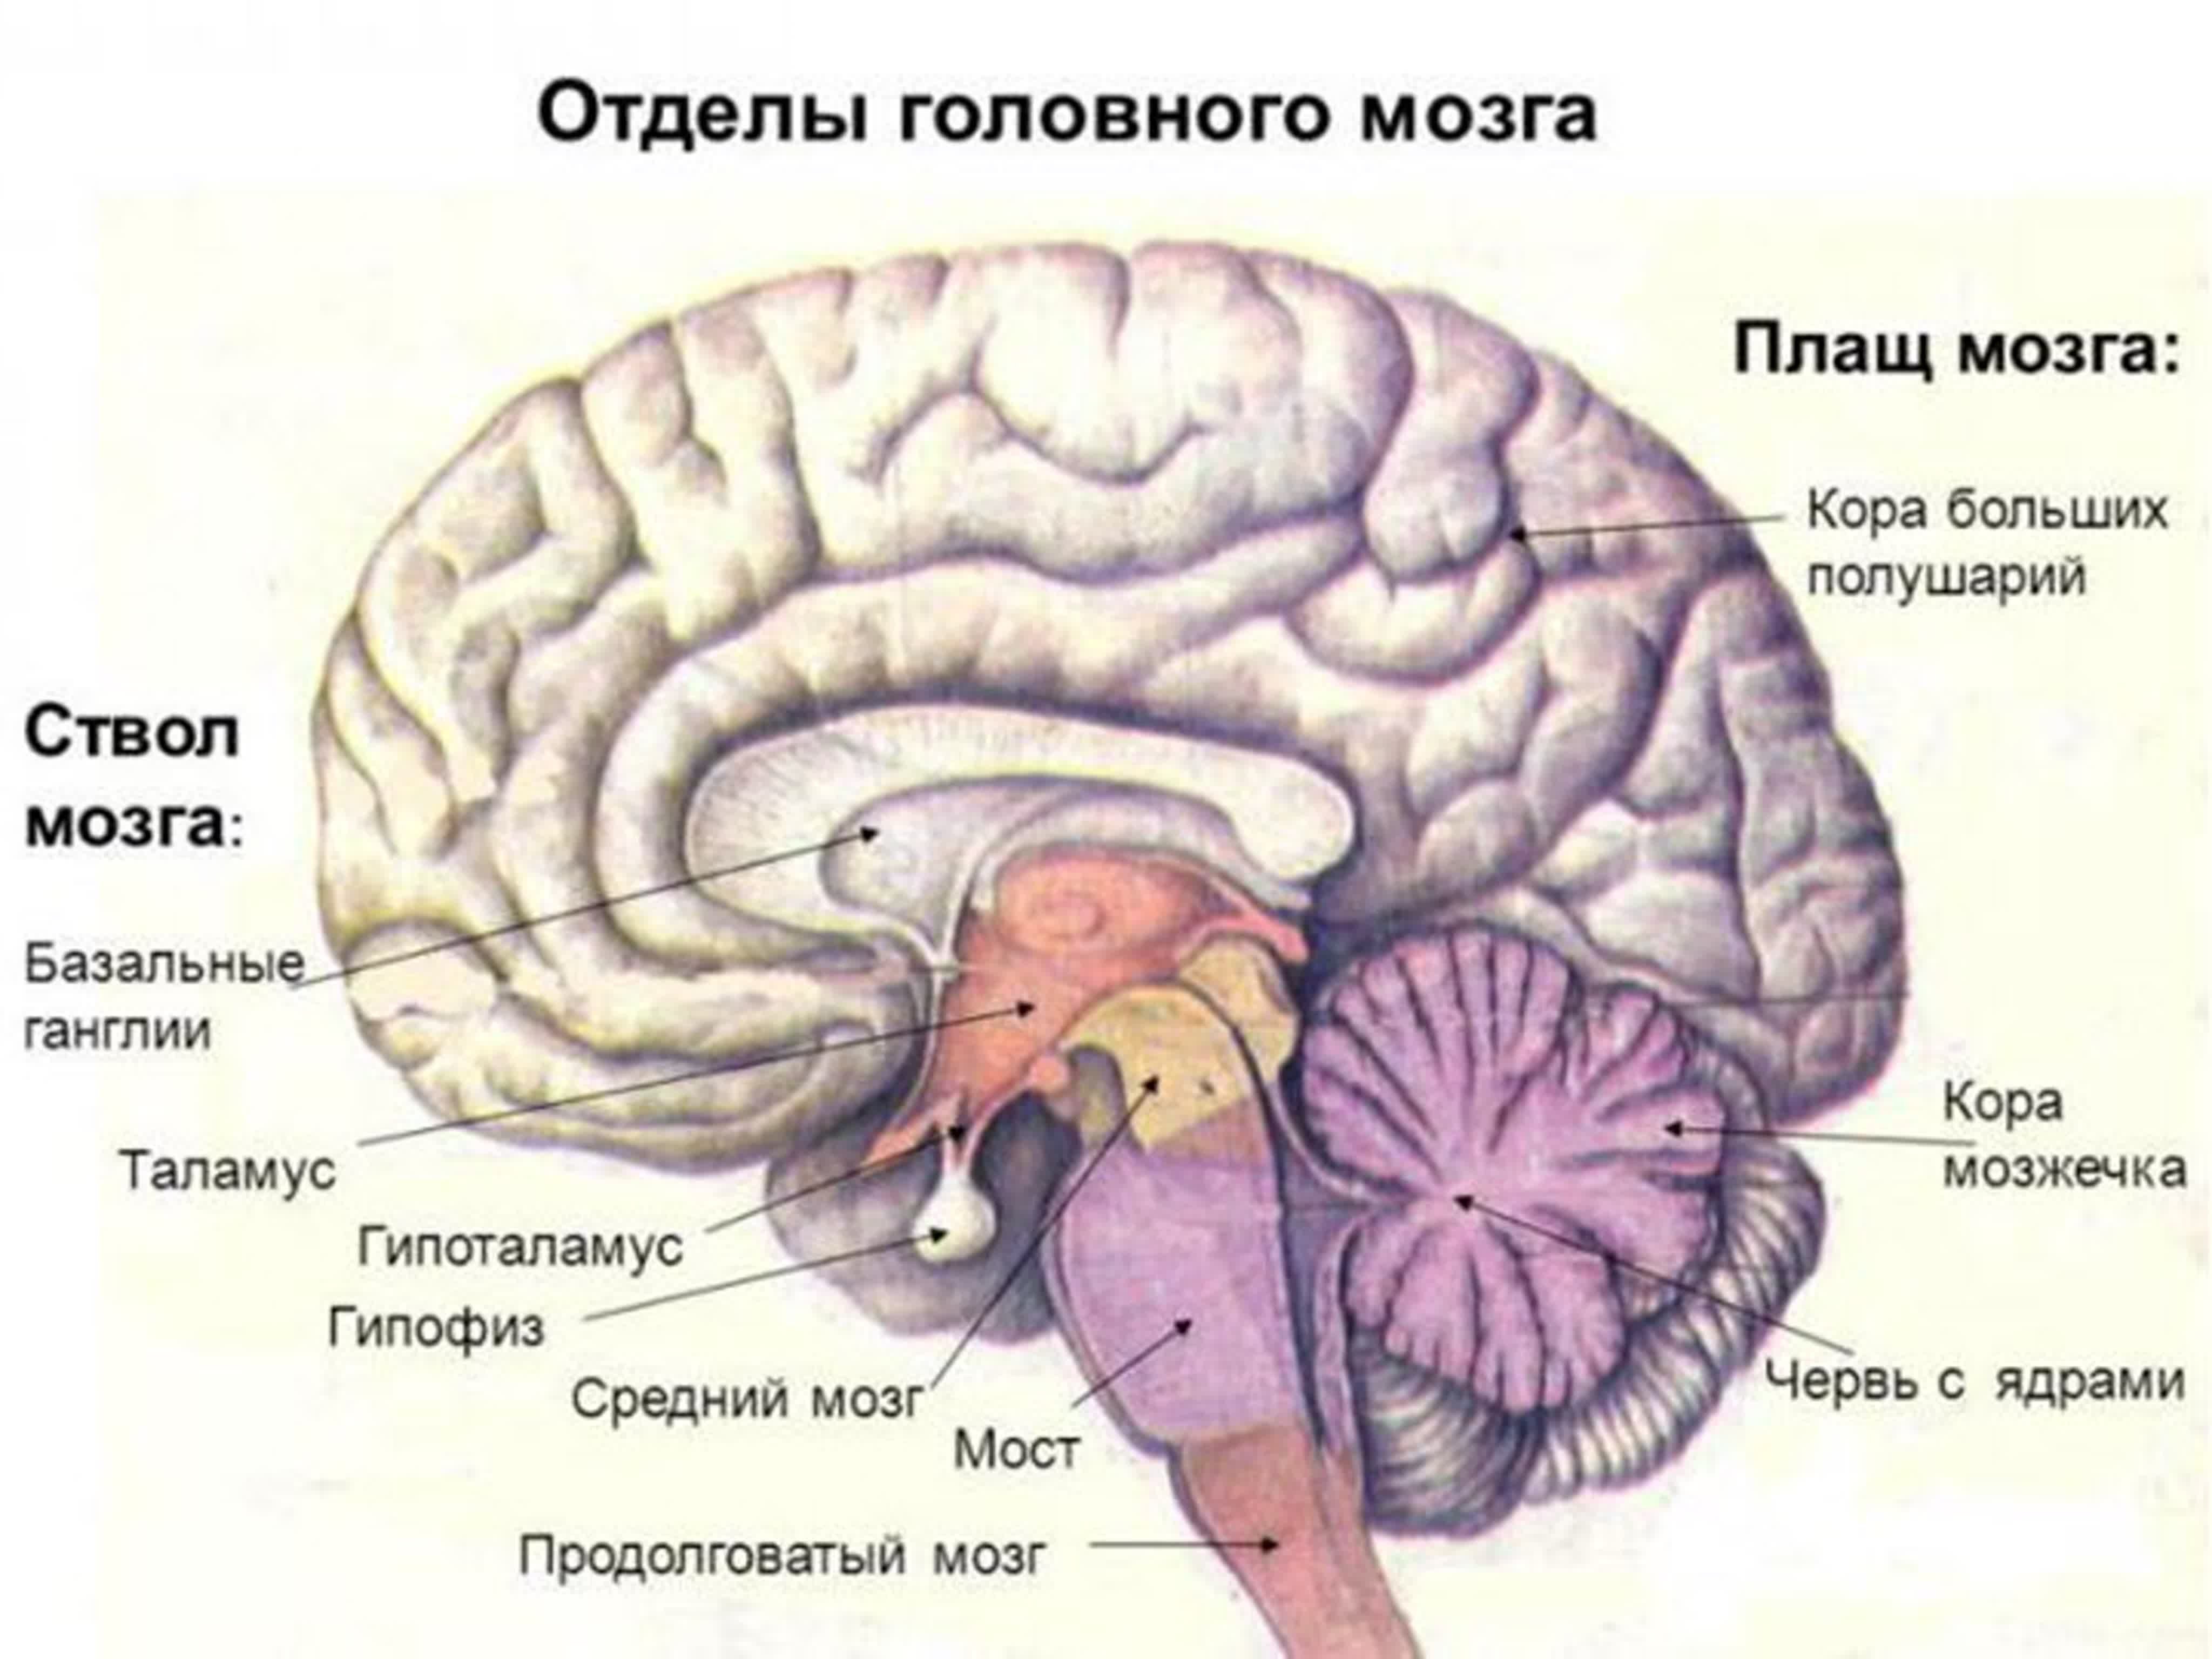 Нижних конечностей и головного мозга. Функции отделов головного мозга рисунок. Функции отделов головного мозга анатомия. Отделы головного мозга и основные структуры отделов. Отделы головного мозга.строение больших полушарий.